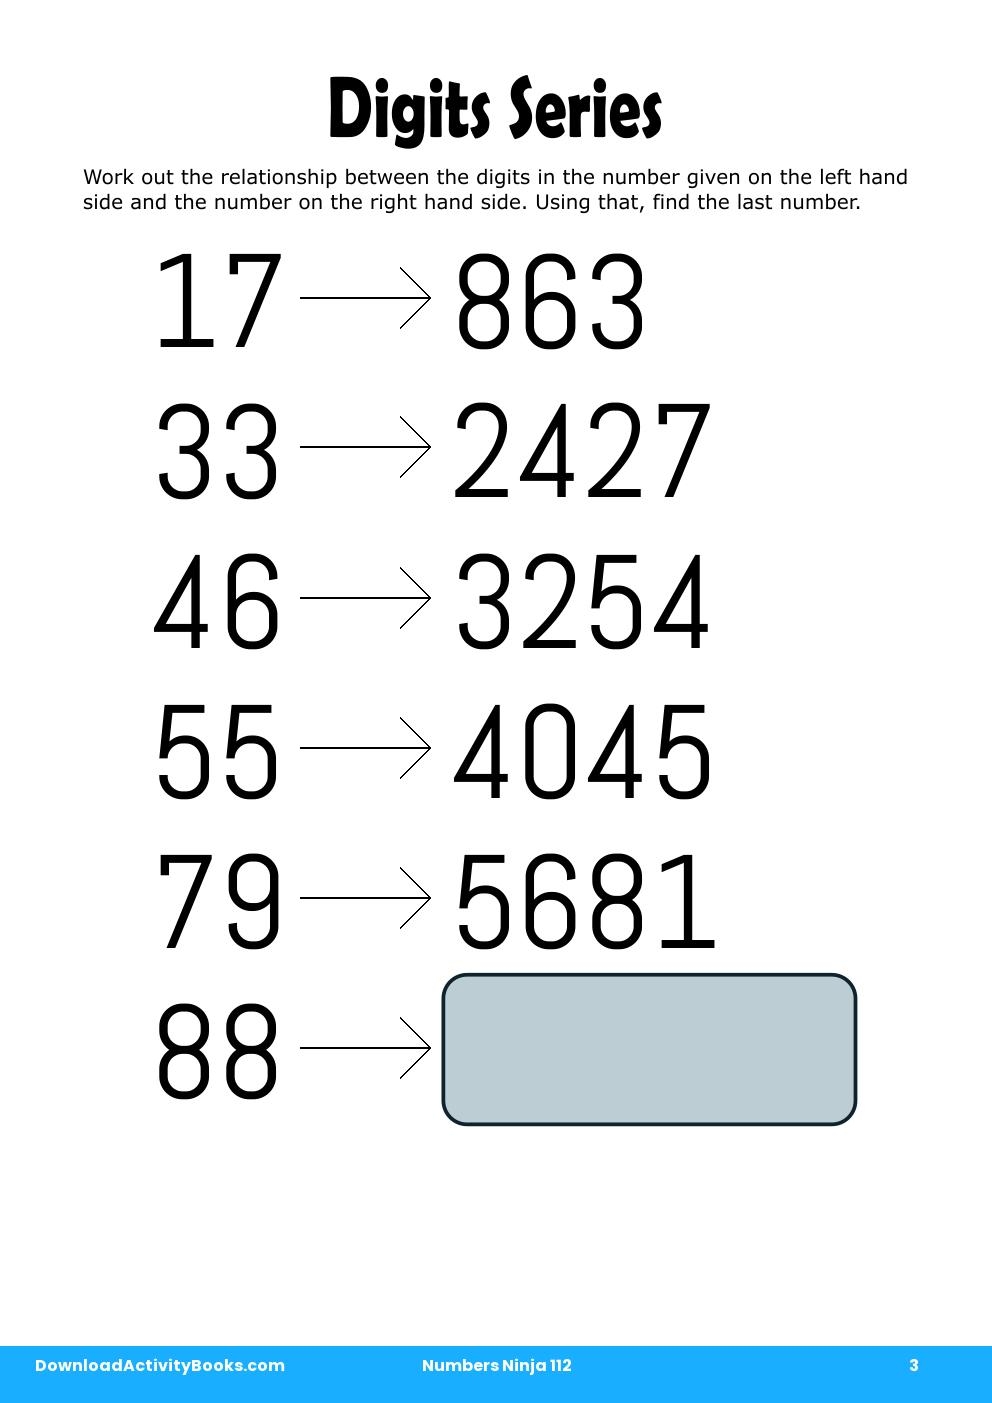 Digits Series in Numbers Ninja 112